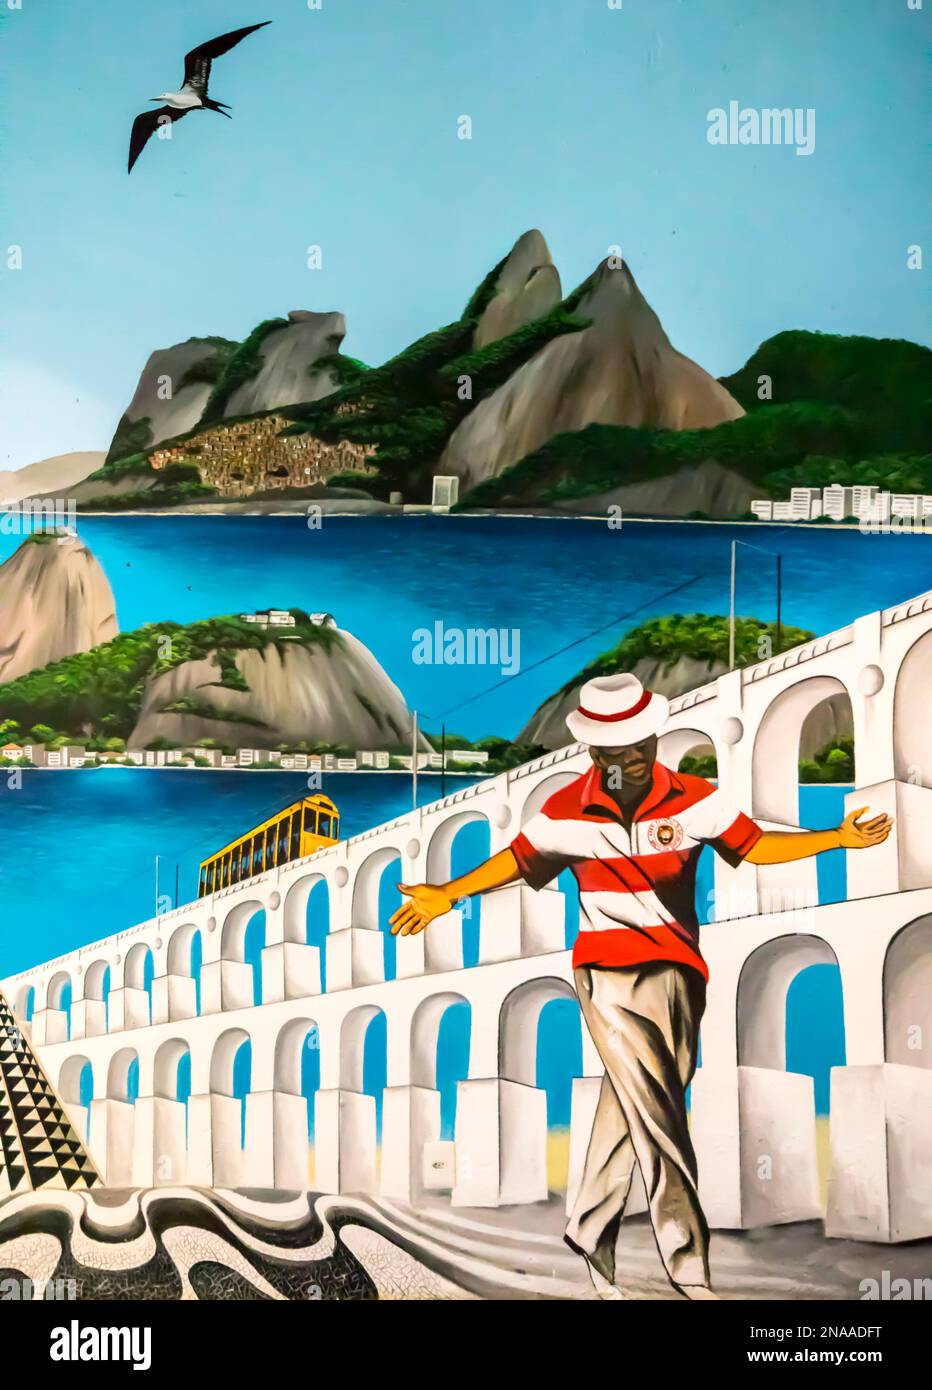 Mural of Rio sights in Santa Teresa, Rio de Janeiro, Brazil; Rio de Janeiro, Rio de Janeiro, Brazil Stock Photo